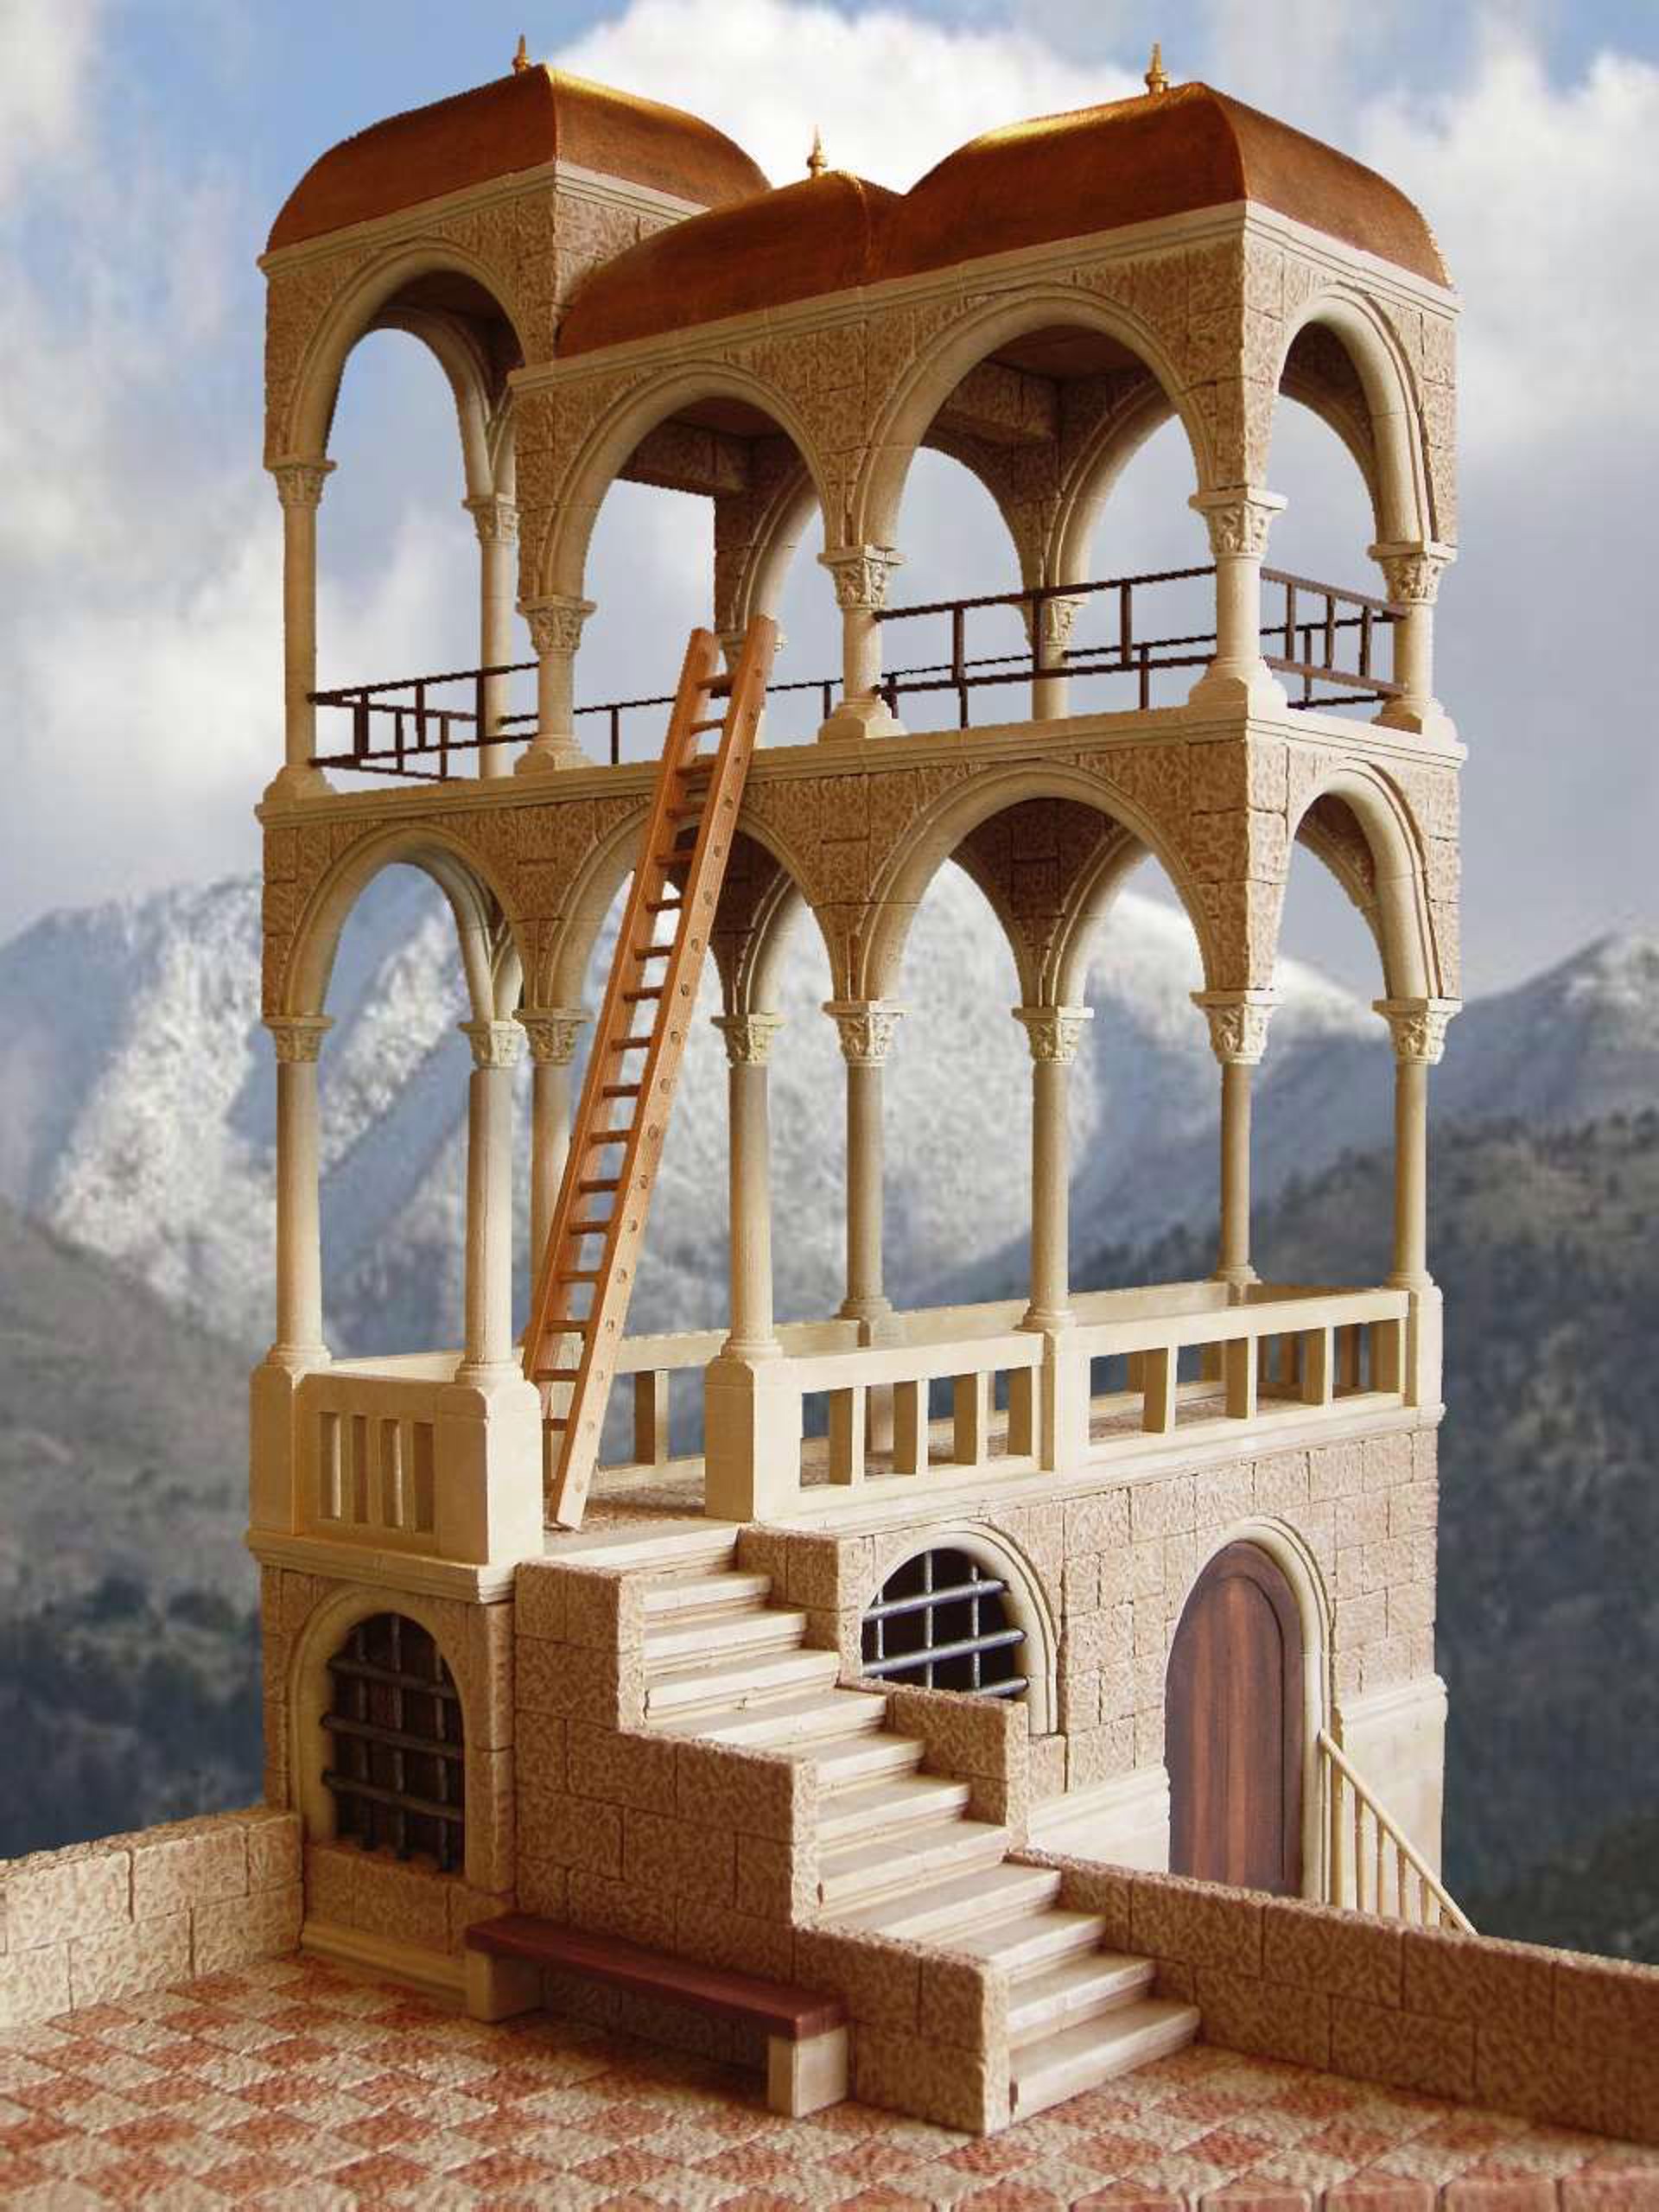 Belvedere by M.C. Escher